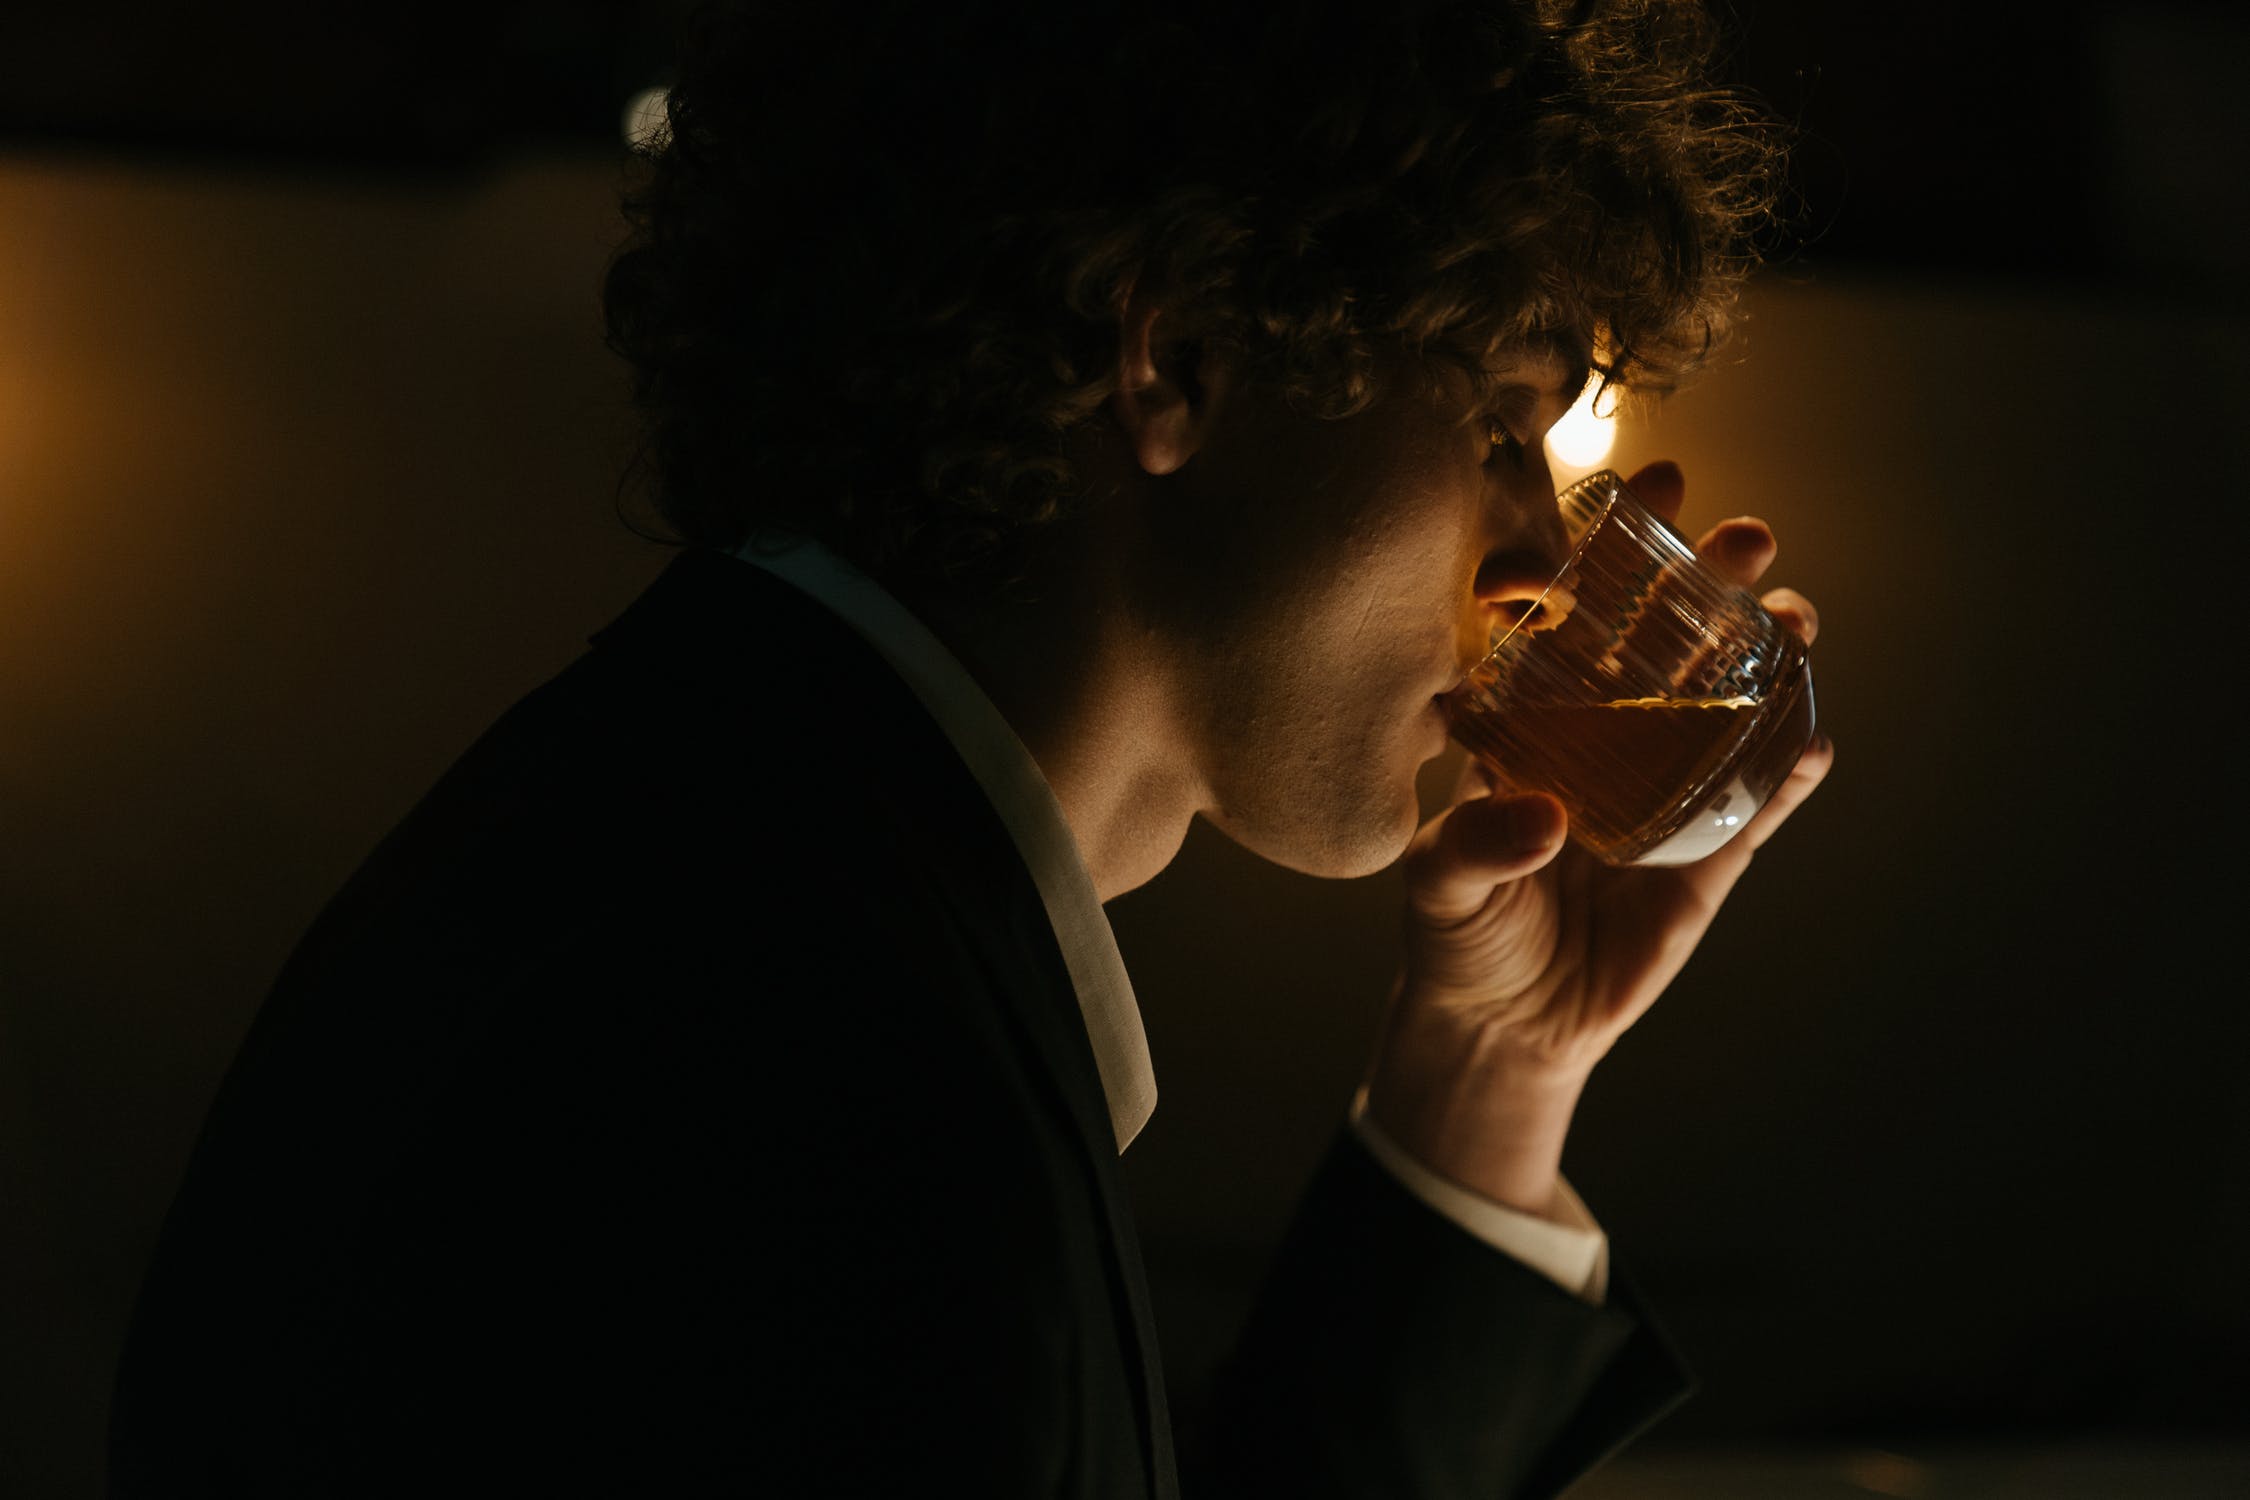 Man drinking | Source: Pexels